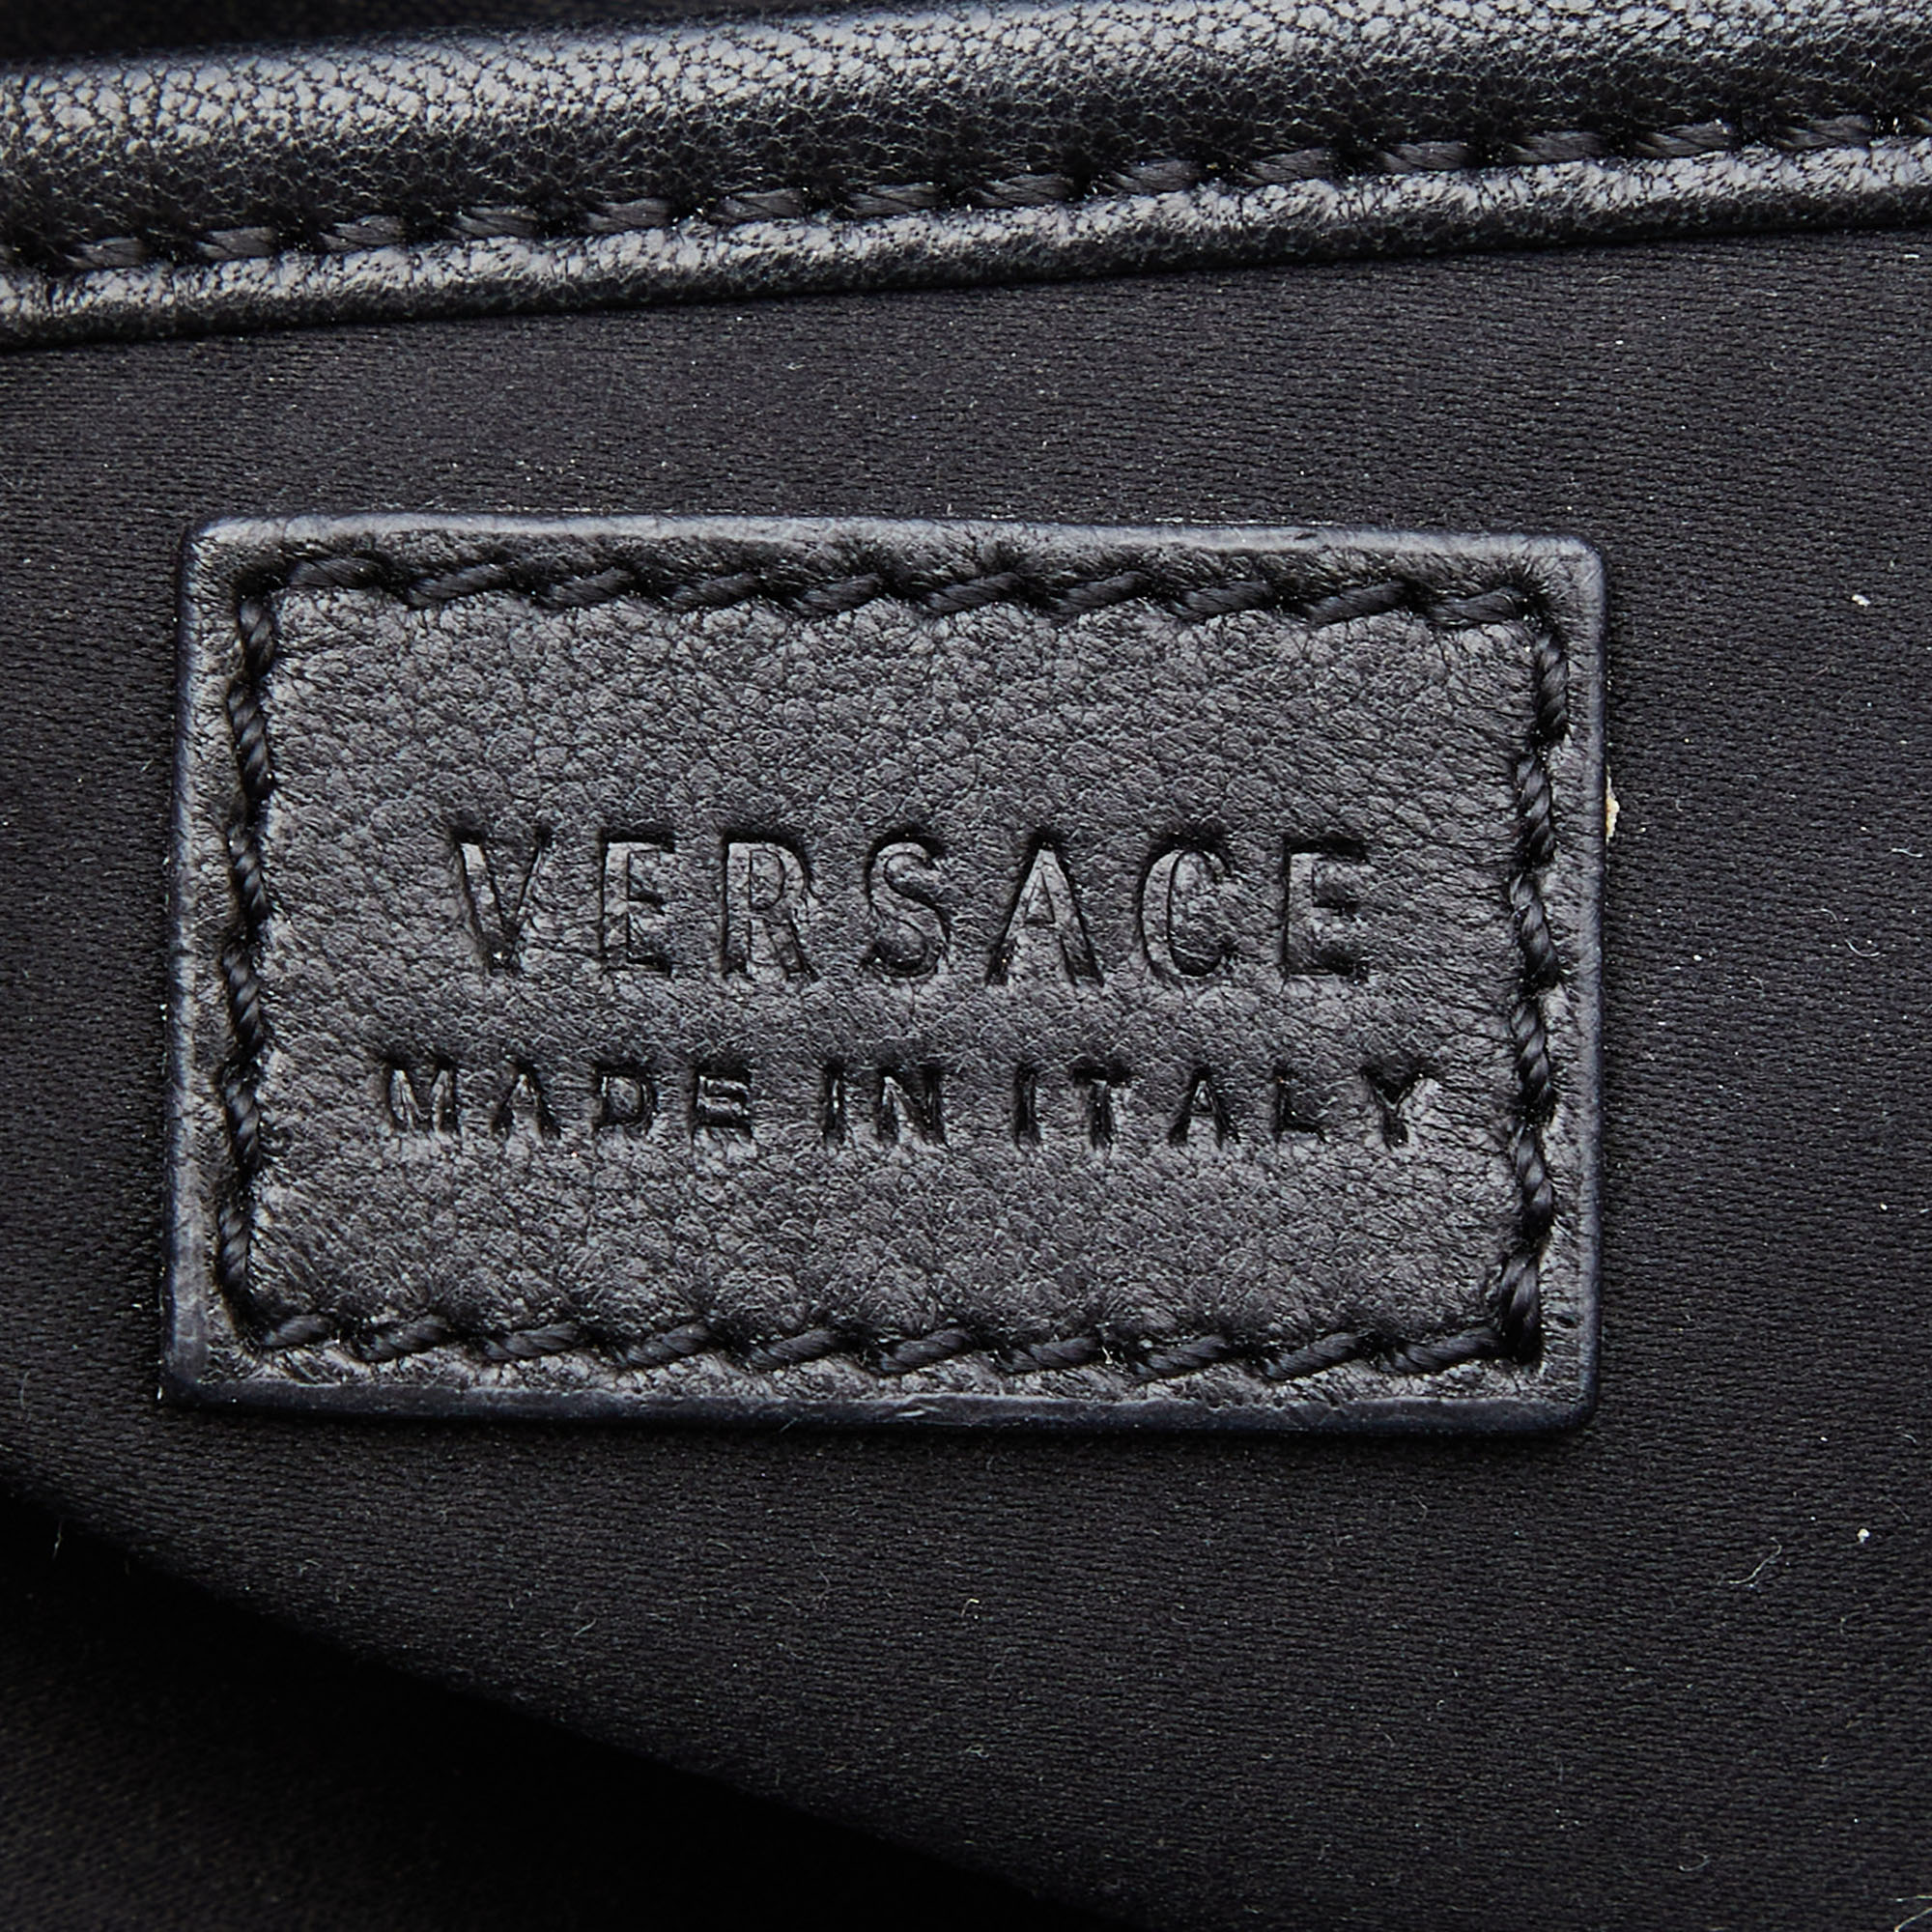 Versace Black/Gold Python And Leather Medusa Studded Chain Shoulder Bag